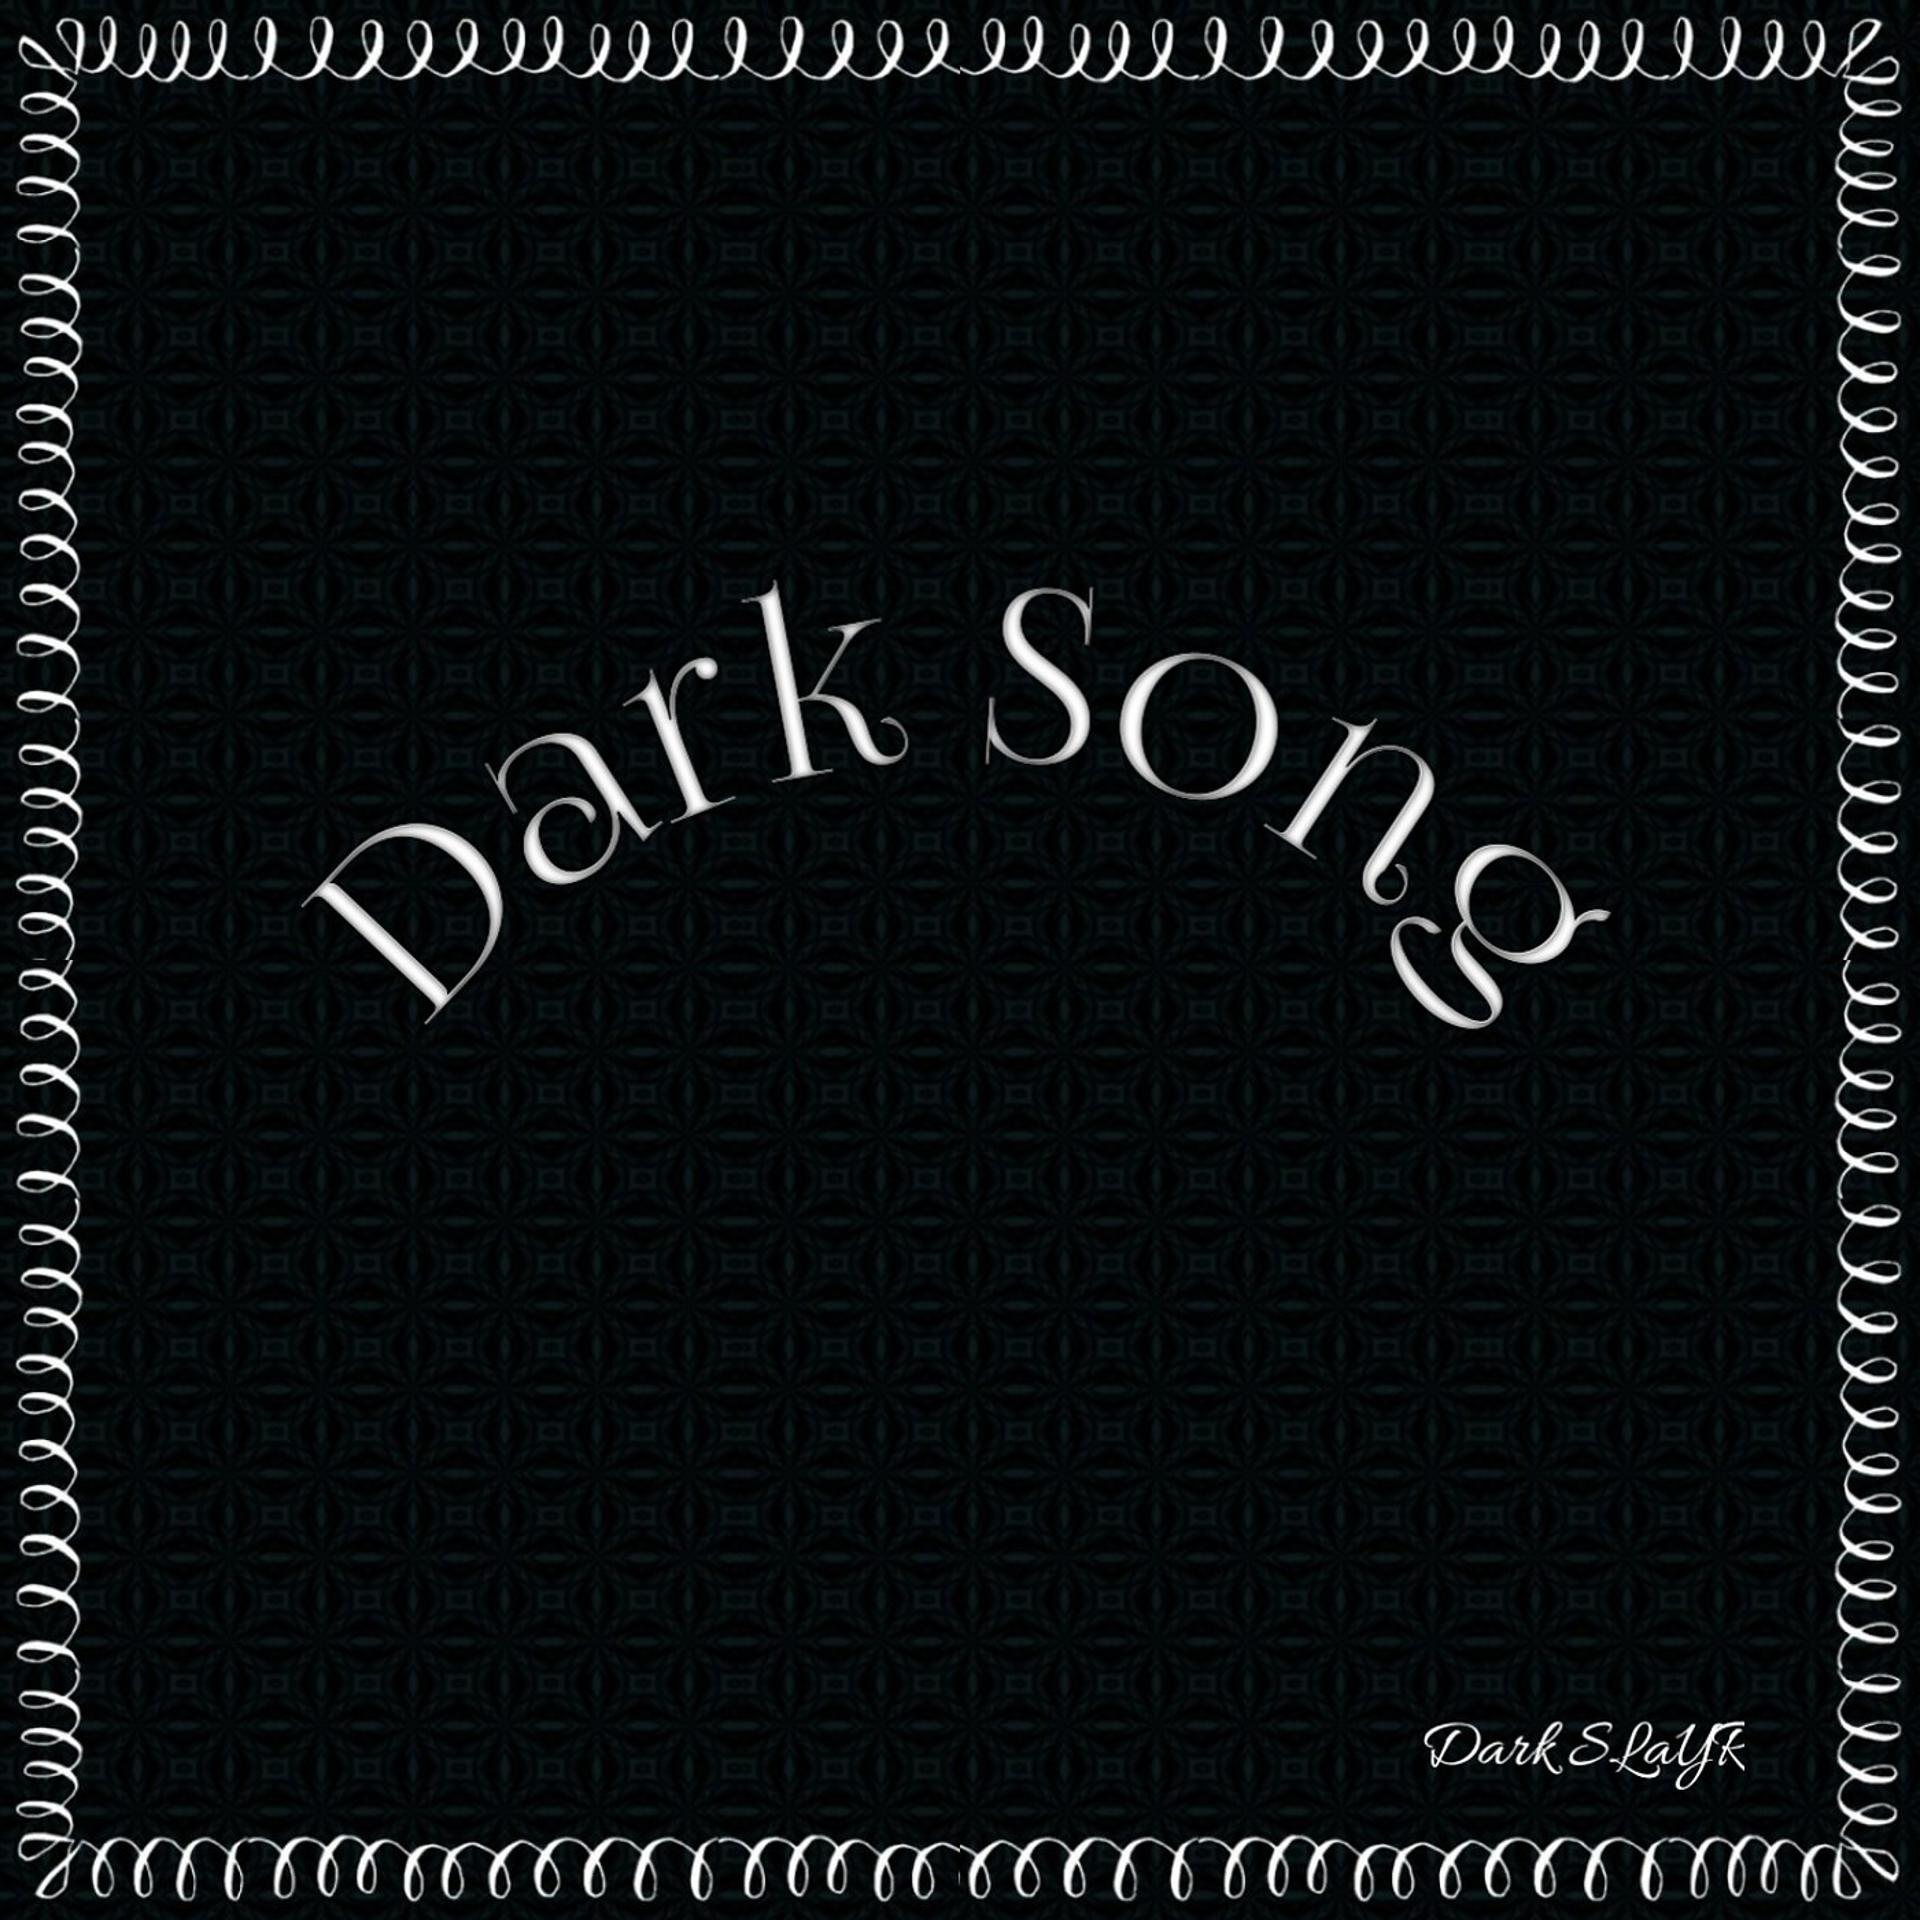 Постер альбома Dark Song